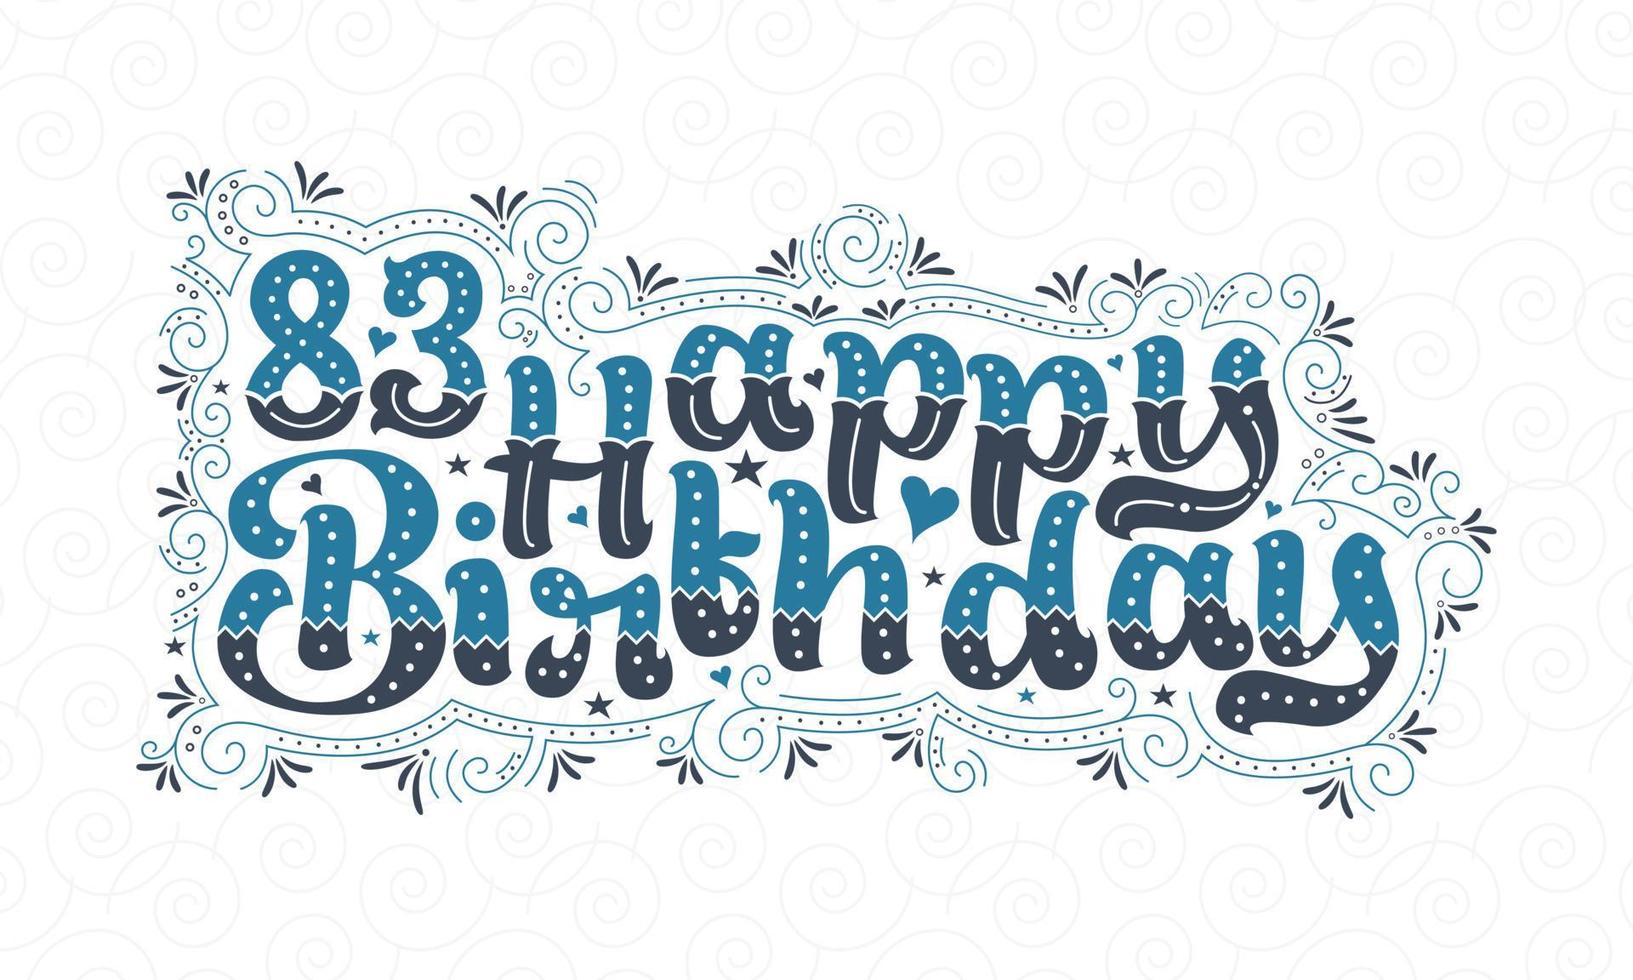 83a scritta di buon compleanno, bellissimo design tipografico di 83 anni con punti, linee e foglie blu e nere. vettore